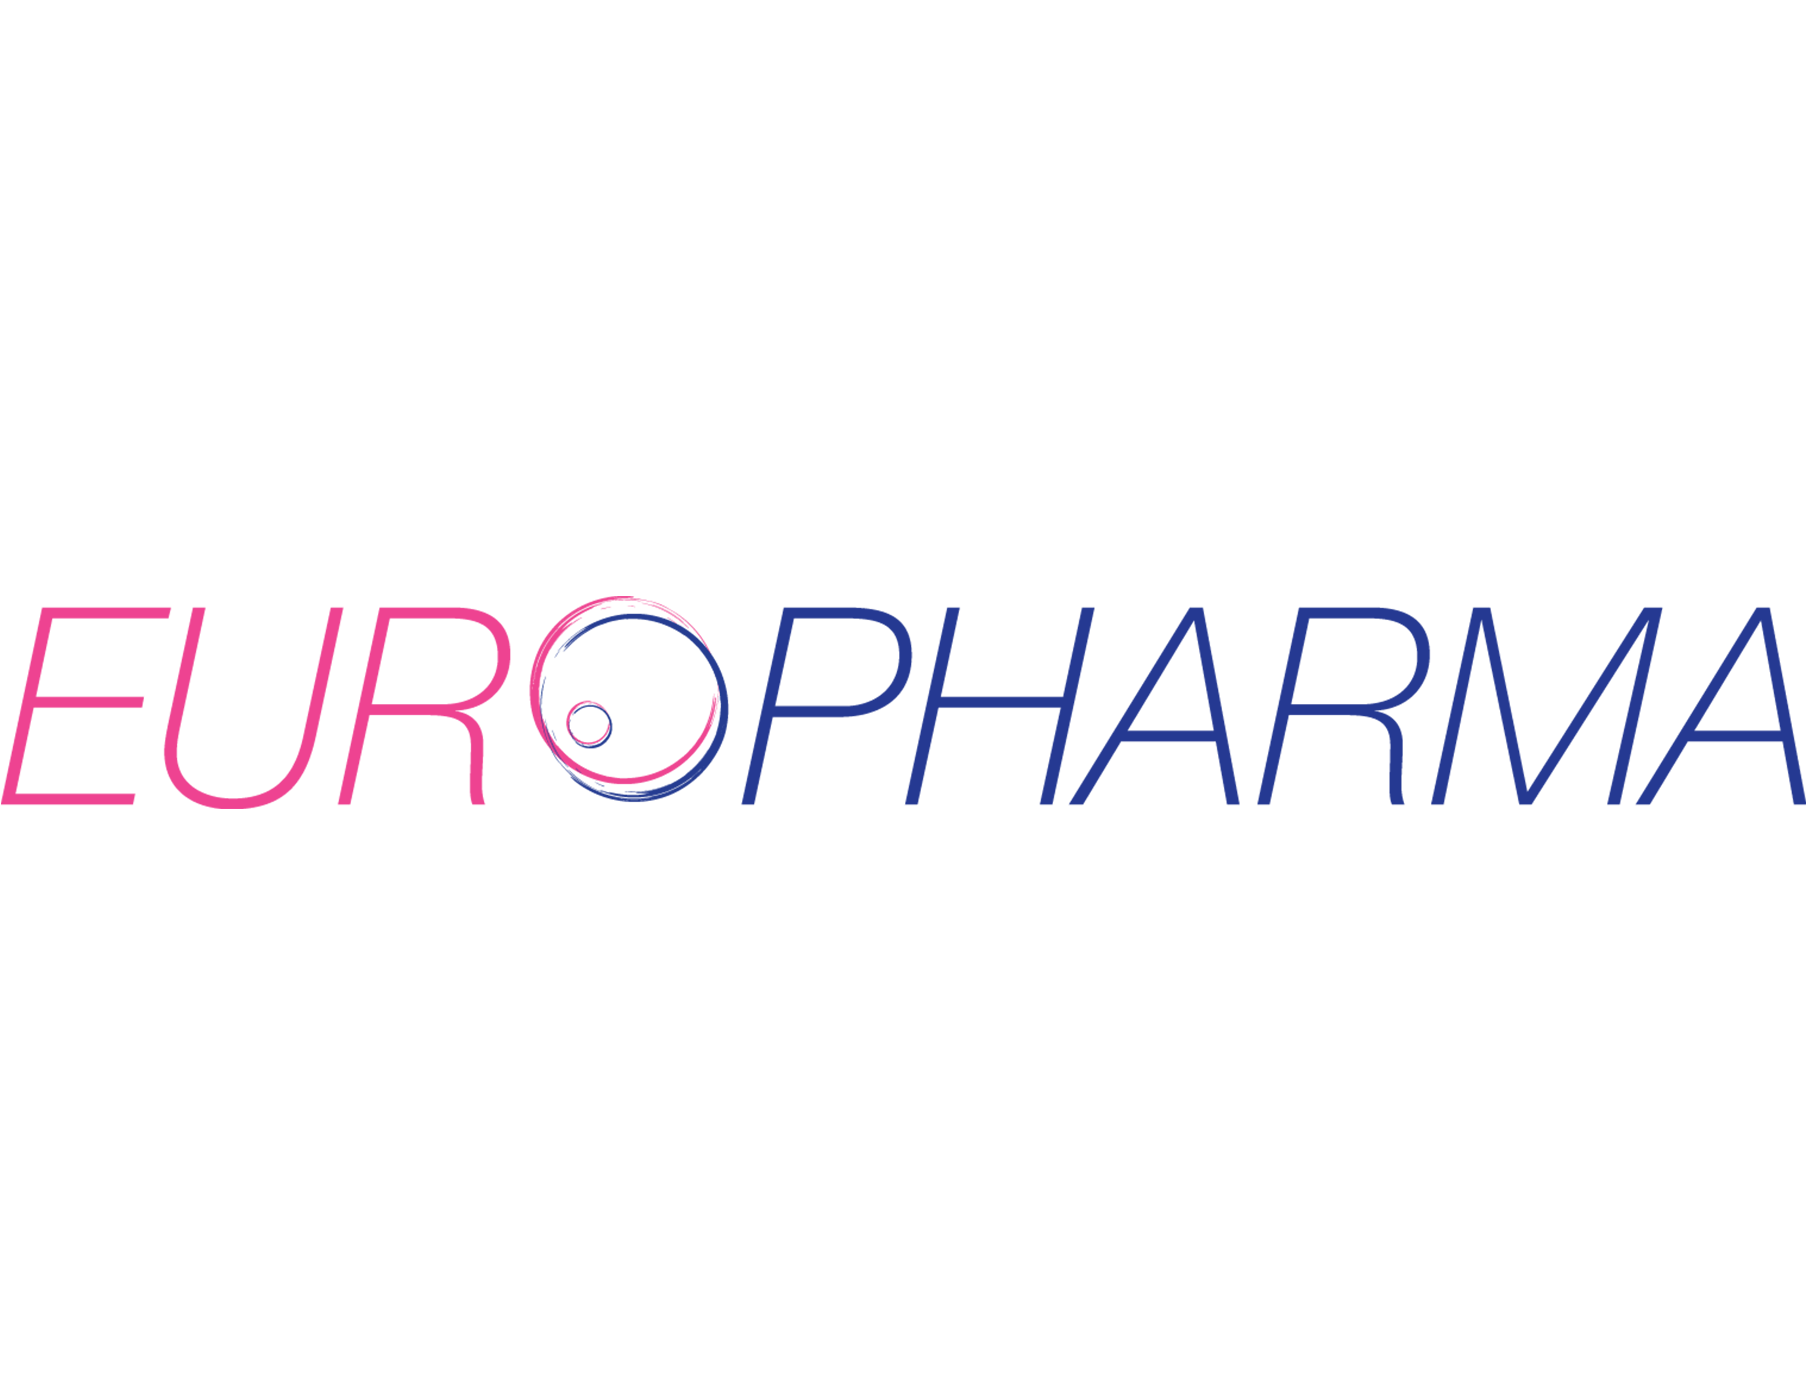 Europharma